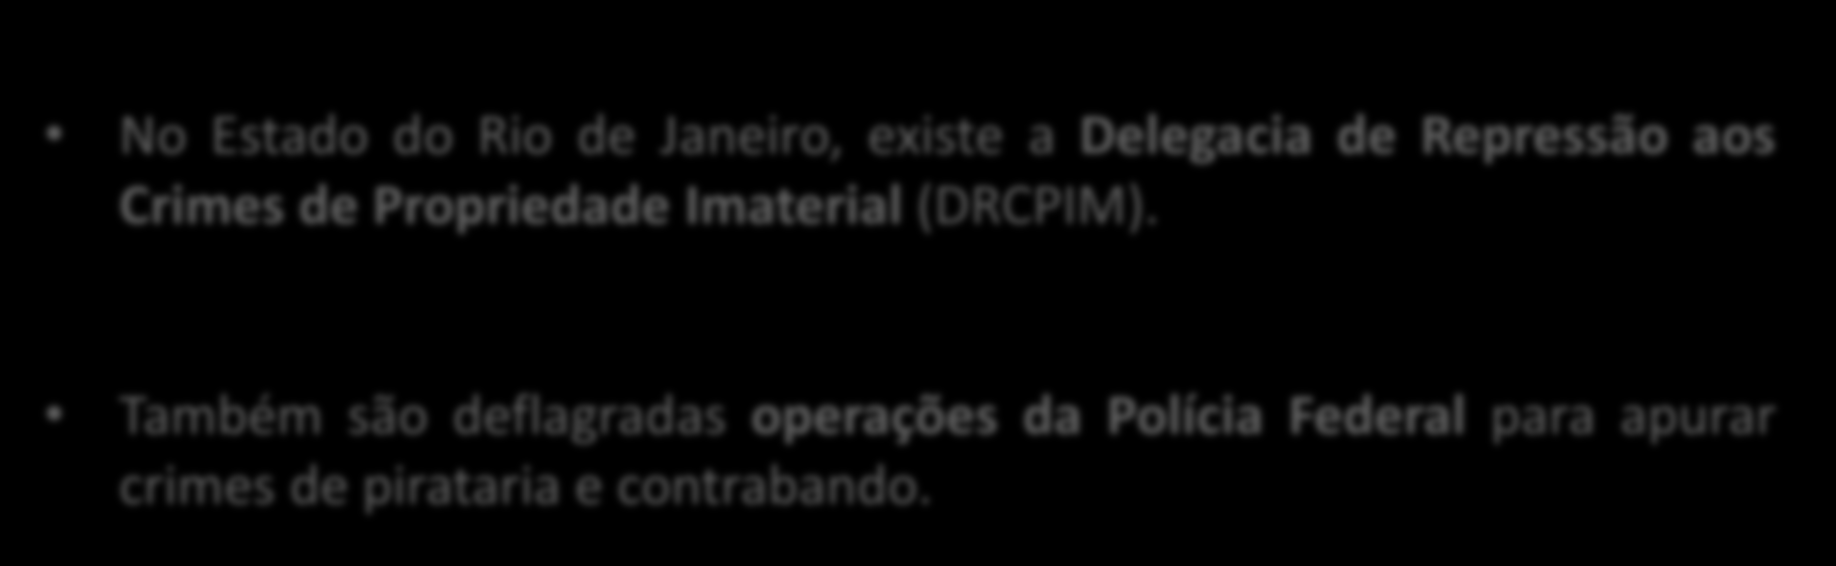 Autoridade Policial No Estado do Rio de Janeiro, existe a Delegacia de Repressão aos Crimes de Propriedade